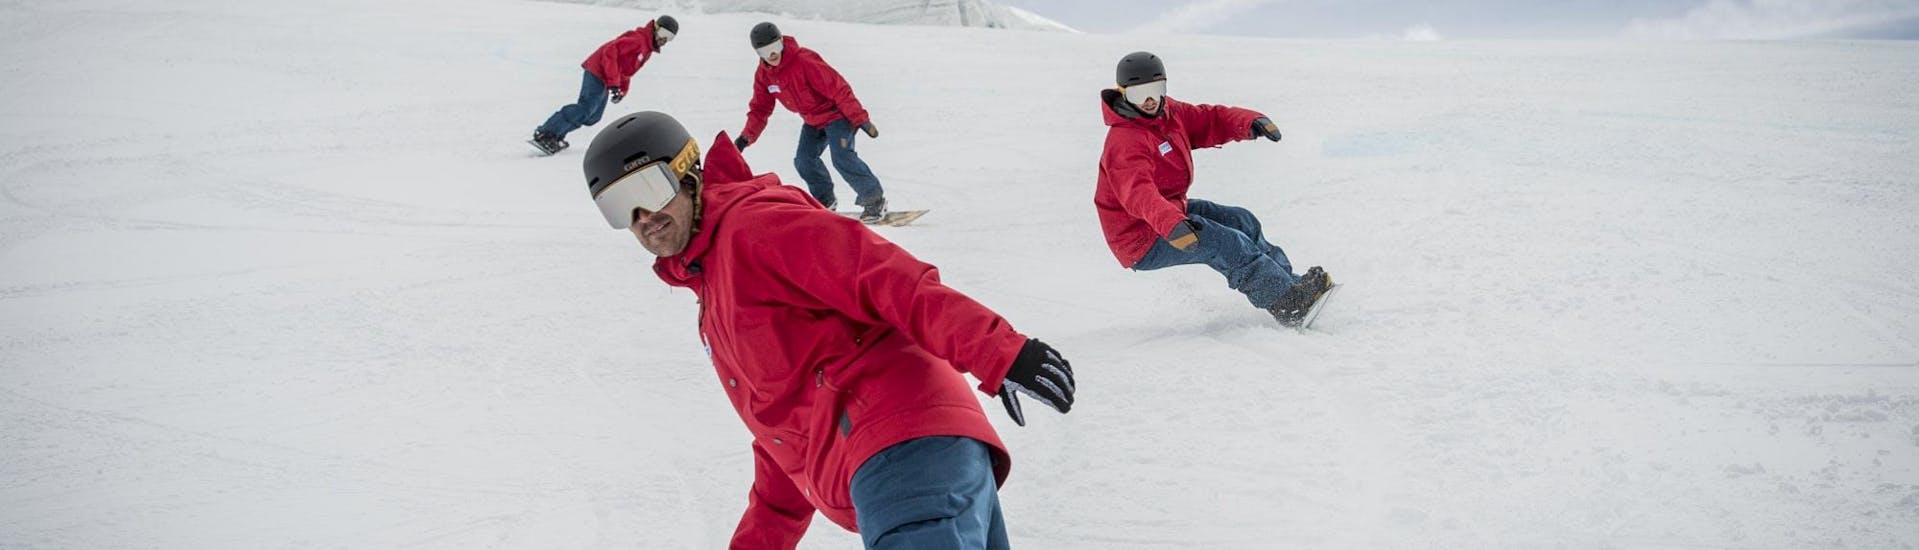 Snowboardkurs für Erwachsene für Fortgeschrittene.